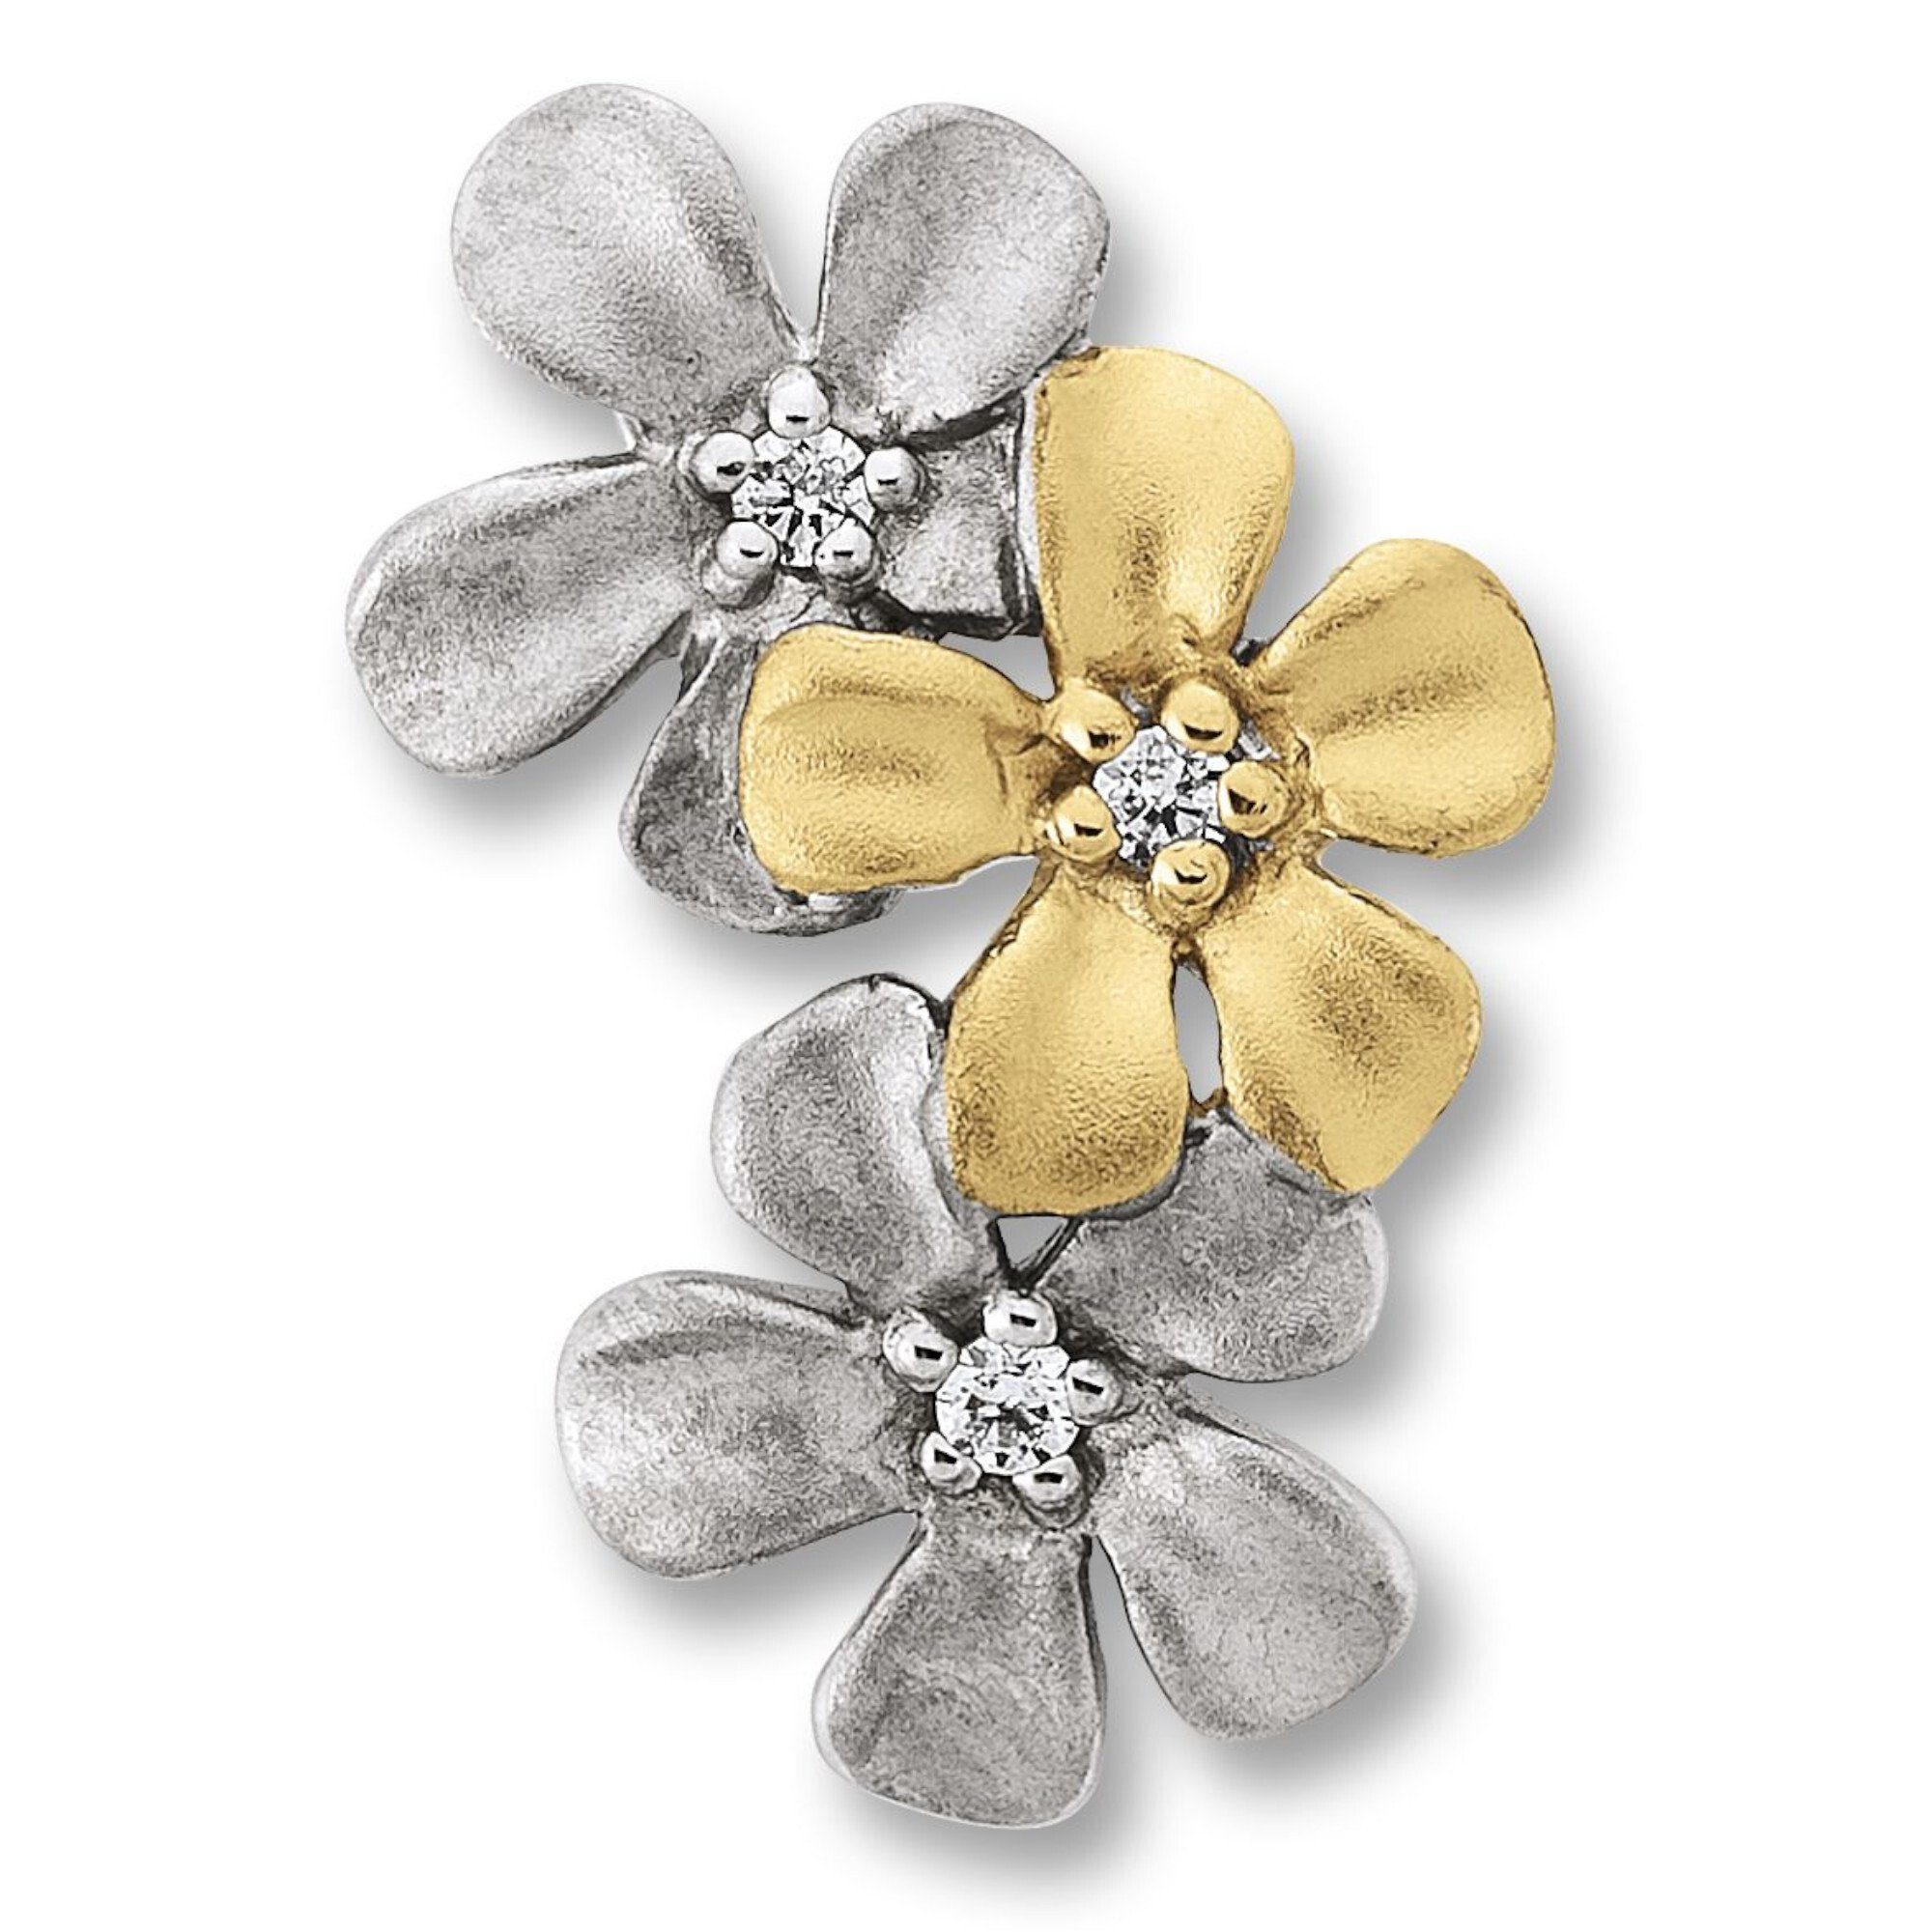 ONE ELEMENT Kettenanhänger Zirkonia Blume Anhänger aus 925 Silber, Damen Silber Schmuck Blume | Kettenanhänger